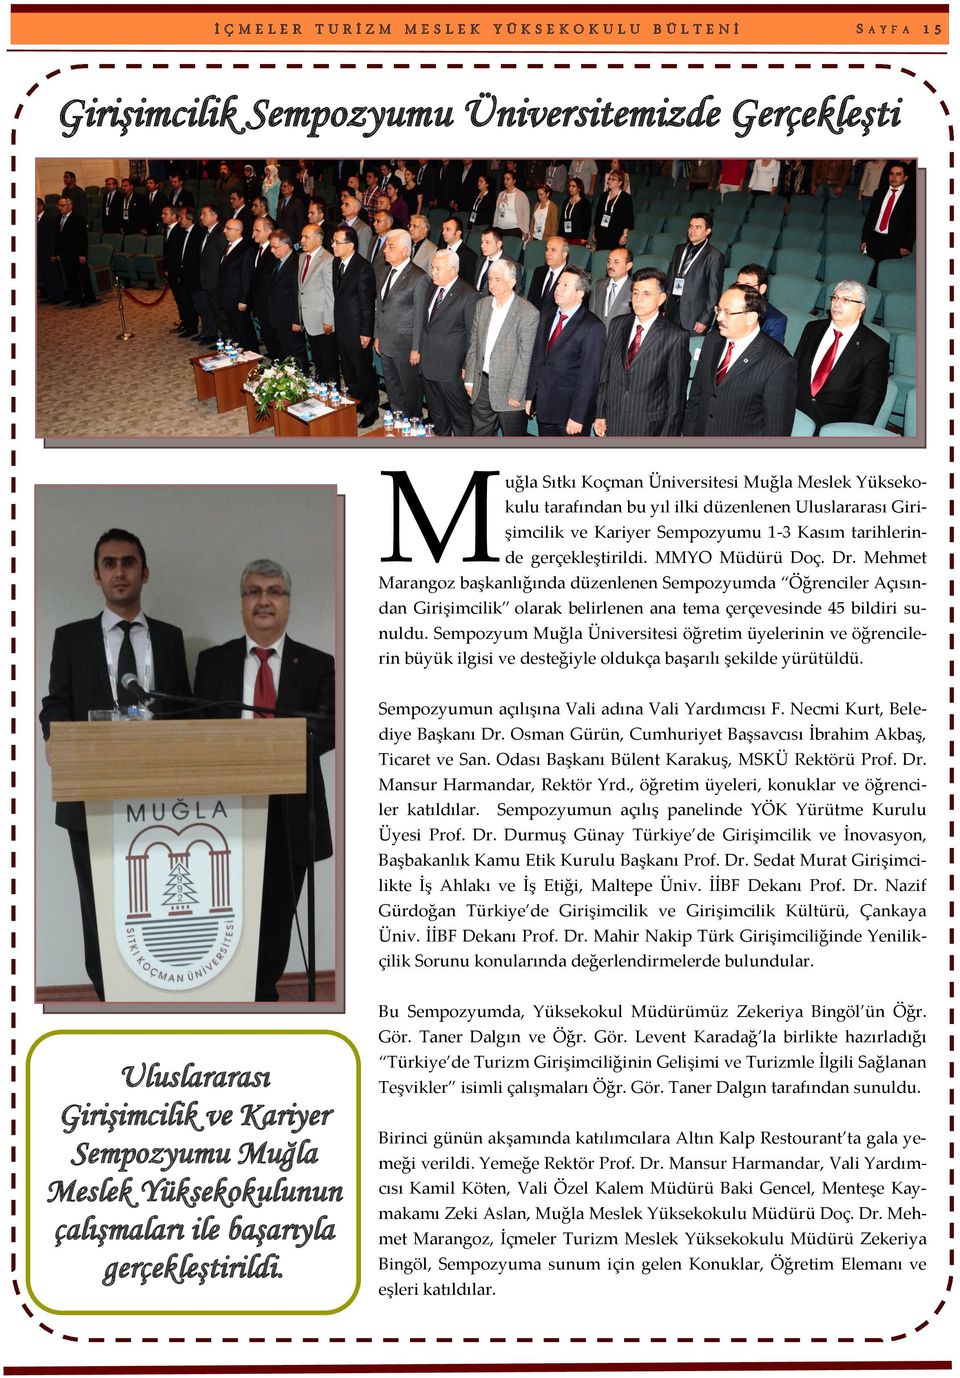 Mehmet Marangoz başkanlığında düzenlenen Sempozyumda Öğrenciler Açısından Girişimcilik olarak belirlenen ana tema çerçevesinde 45 bildiri sunuldu.